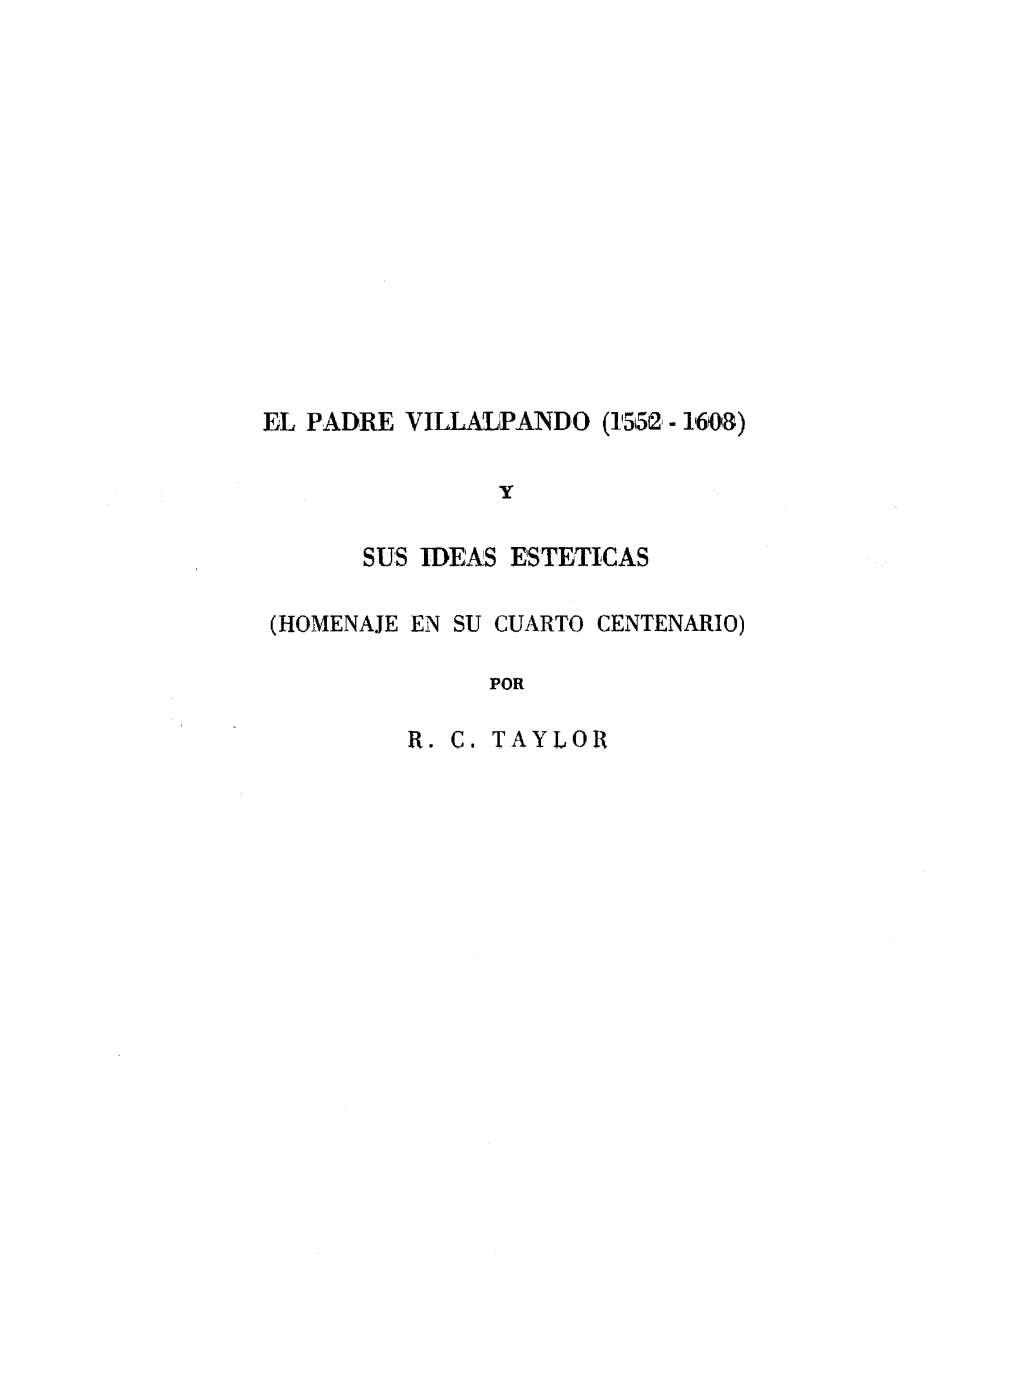 El Padre Villalpando (1552-1608) Y Sus Ideas Estéticas $B